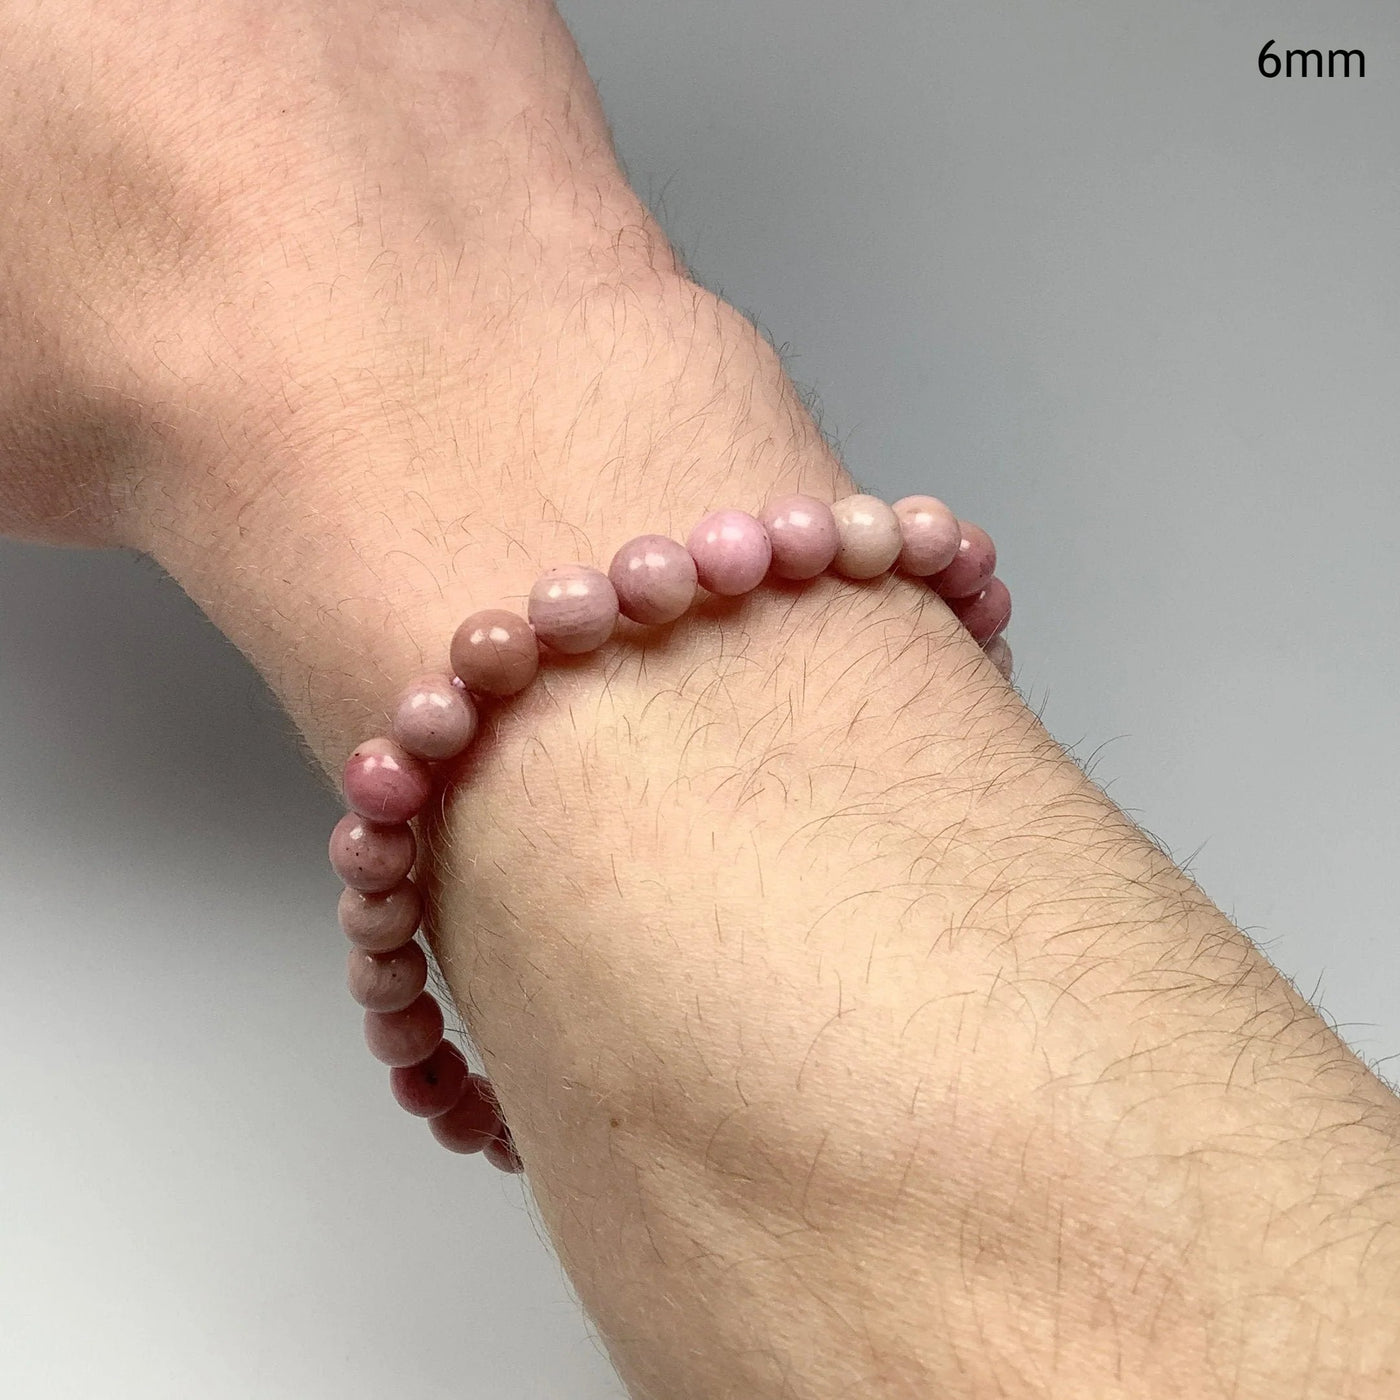 Pink Rhodonite Beaded Bracelet